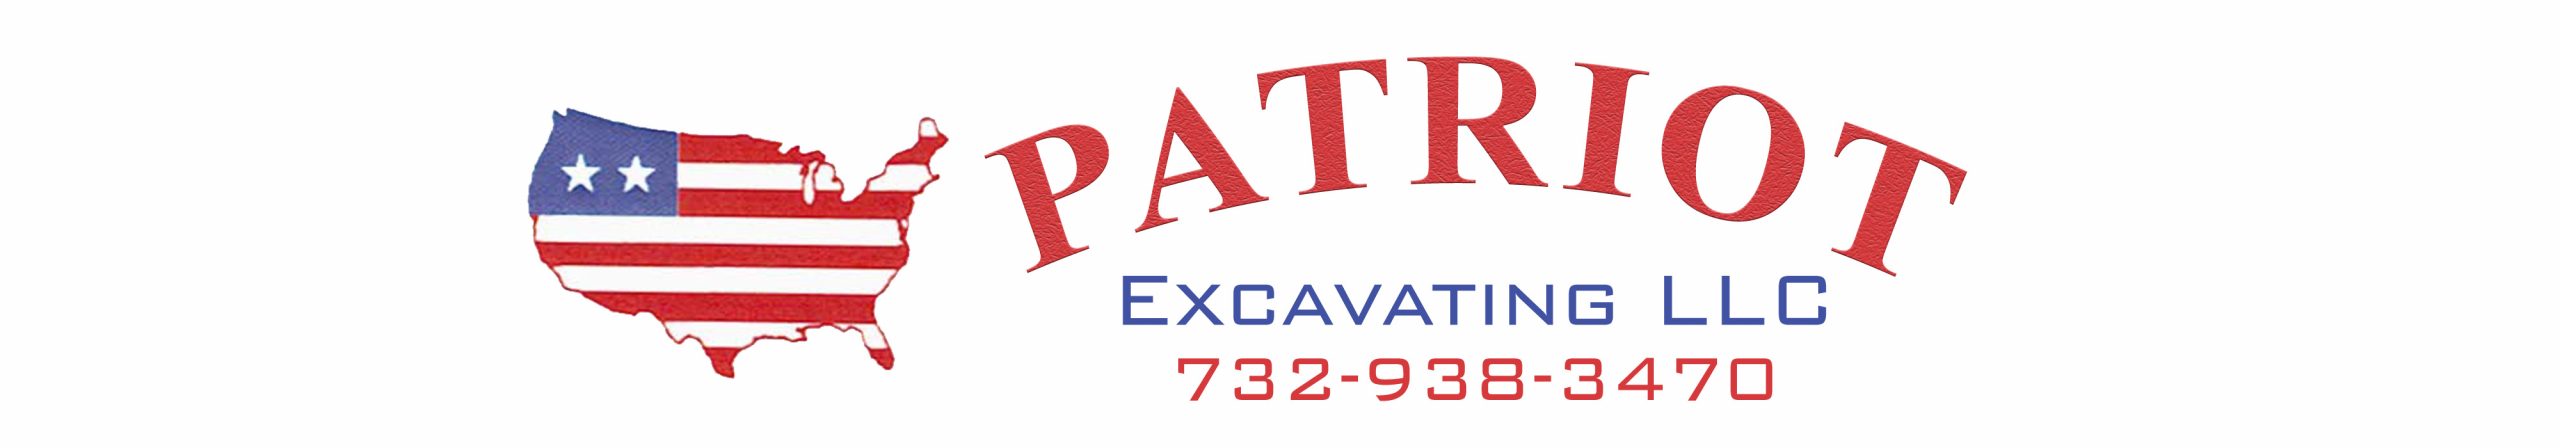 Patriot Excavating 732-938-3470